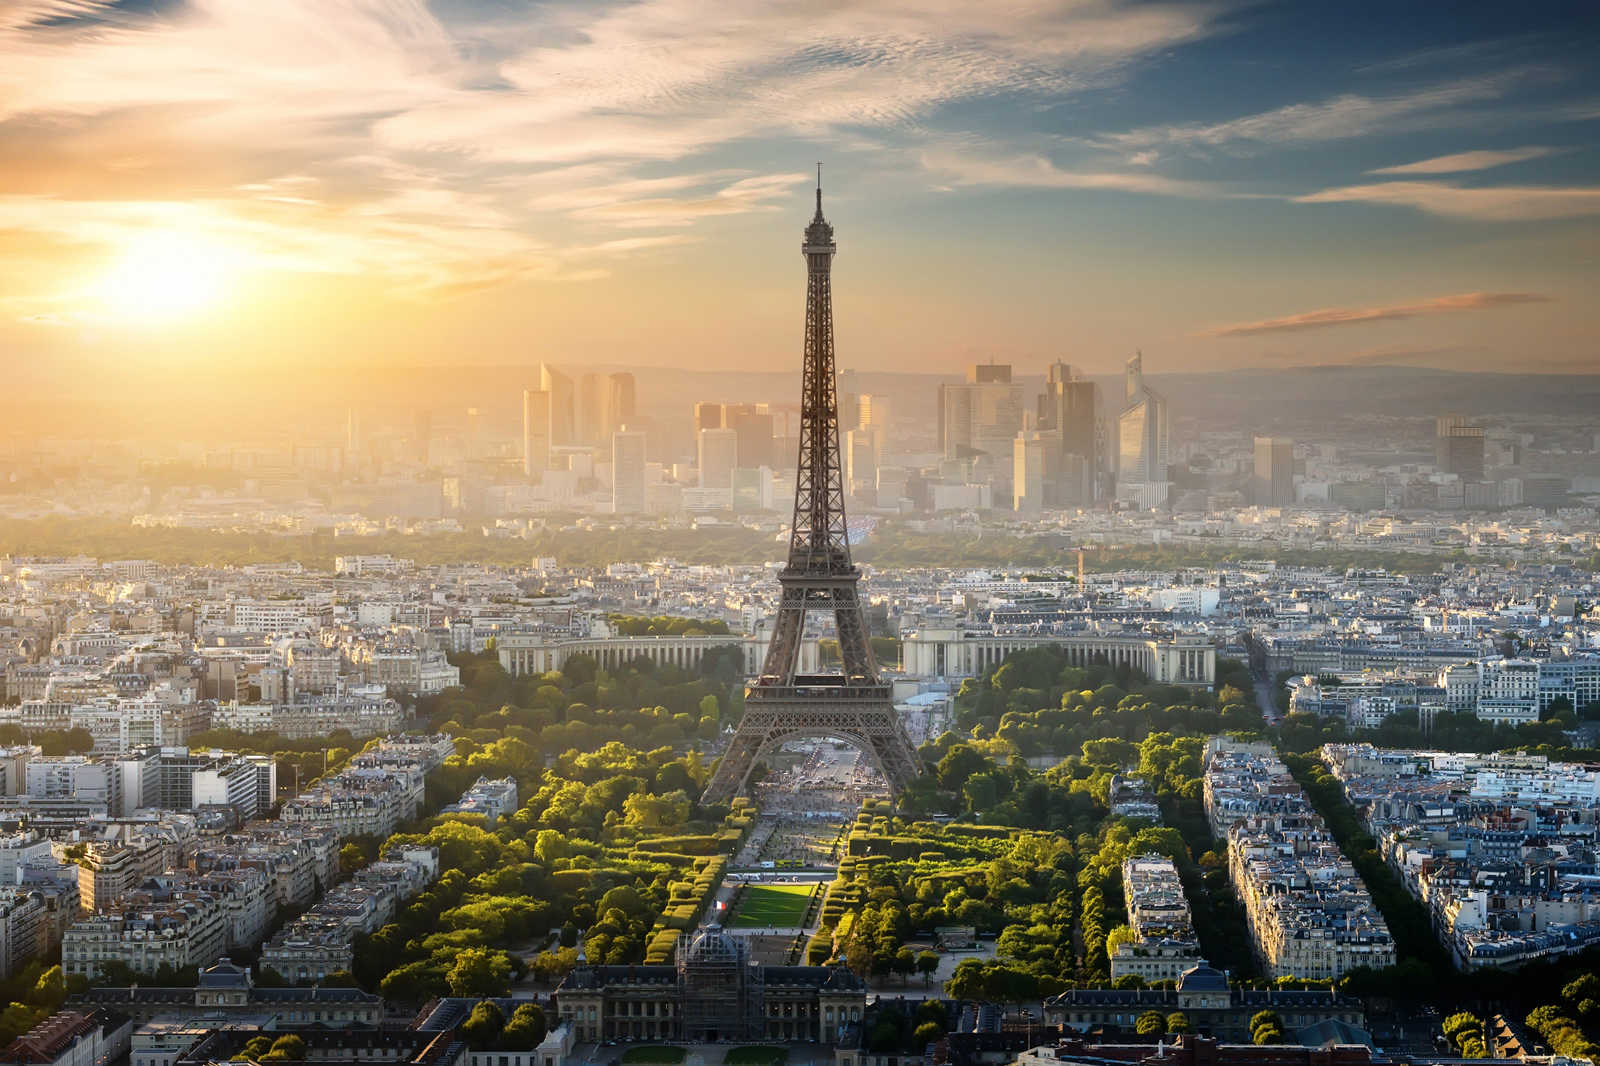             Canvas Eifel Tower Paris - 0.90 m x 0.60 m
        